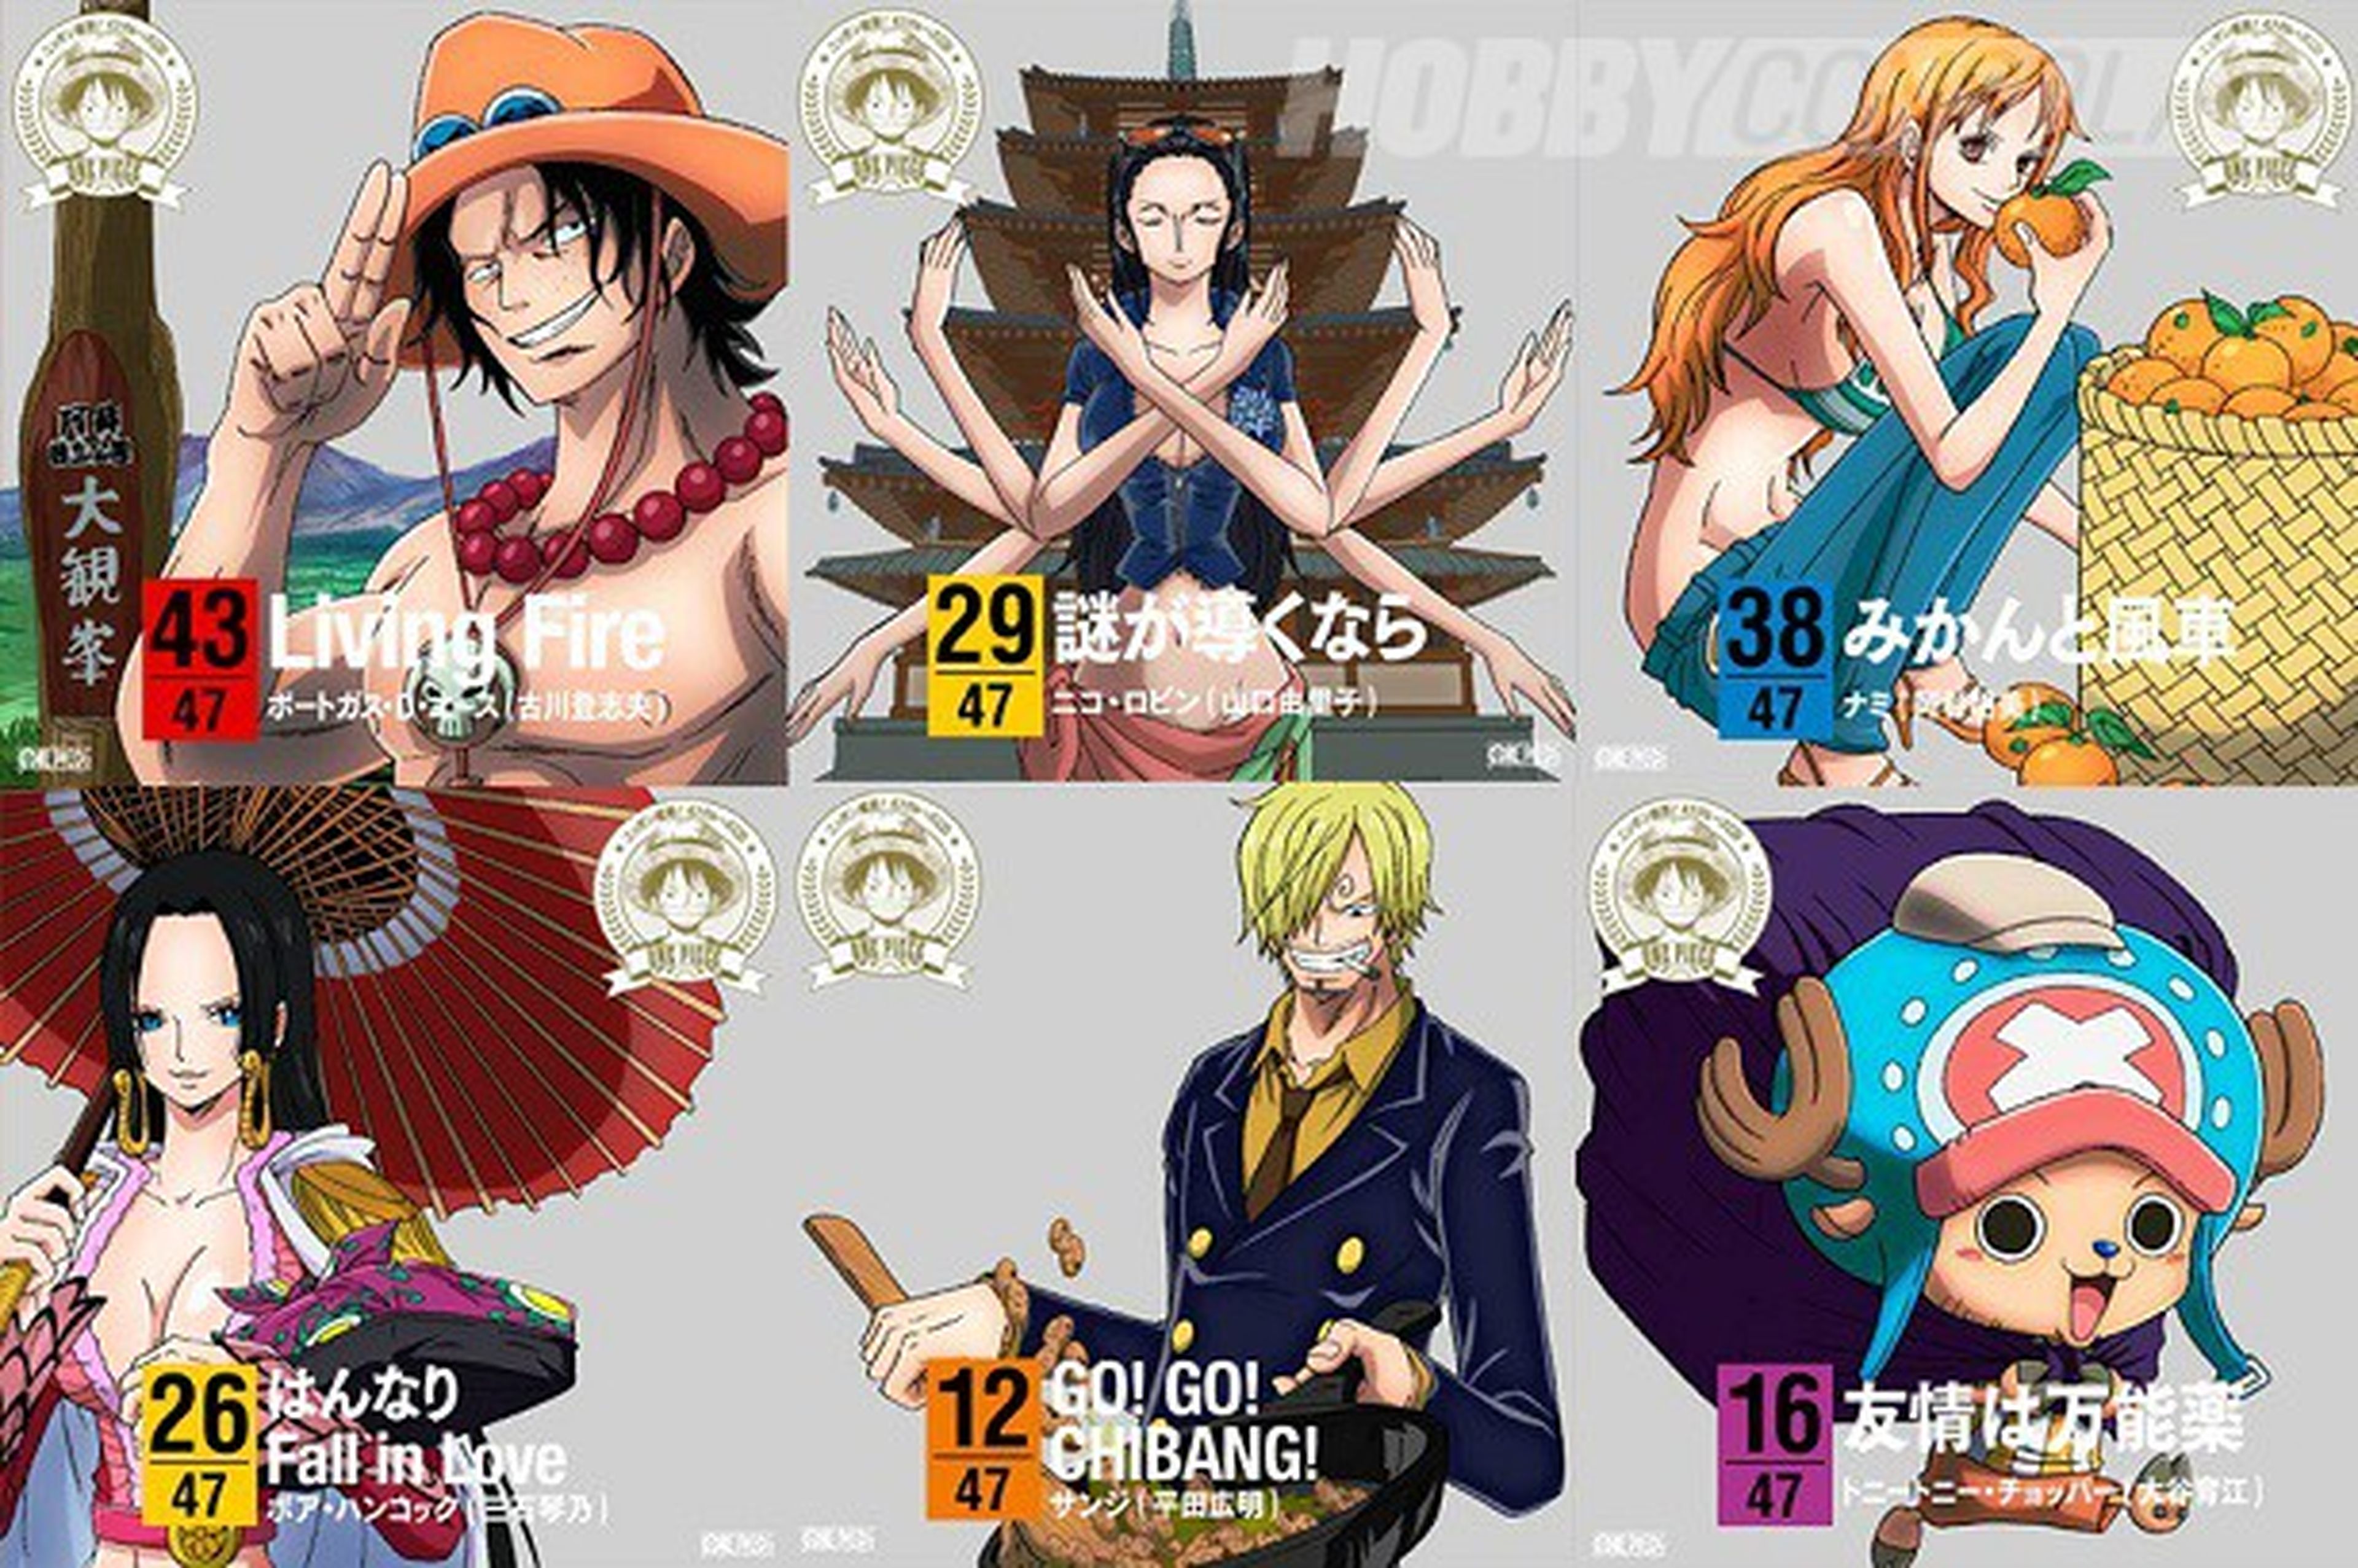 El 28 de enero se ponen a la venta 47 CD's de One Piece